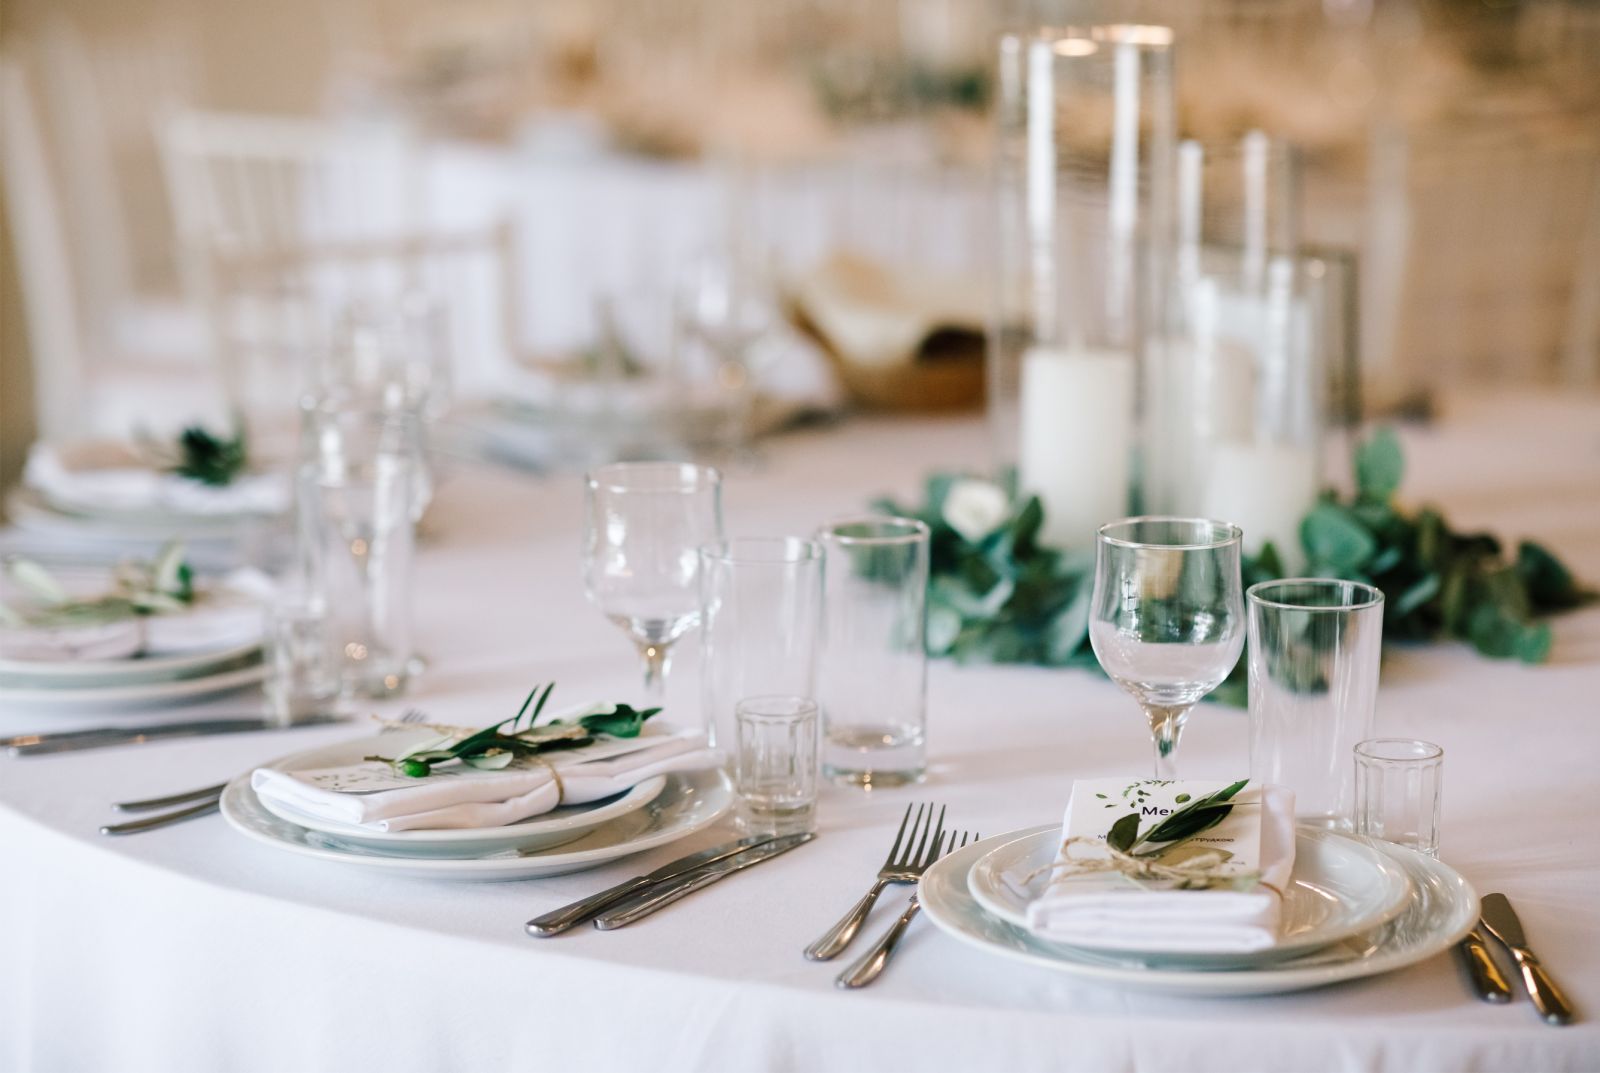 Imagen detallada de la mesa de una boda